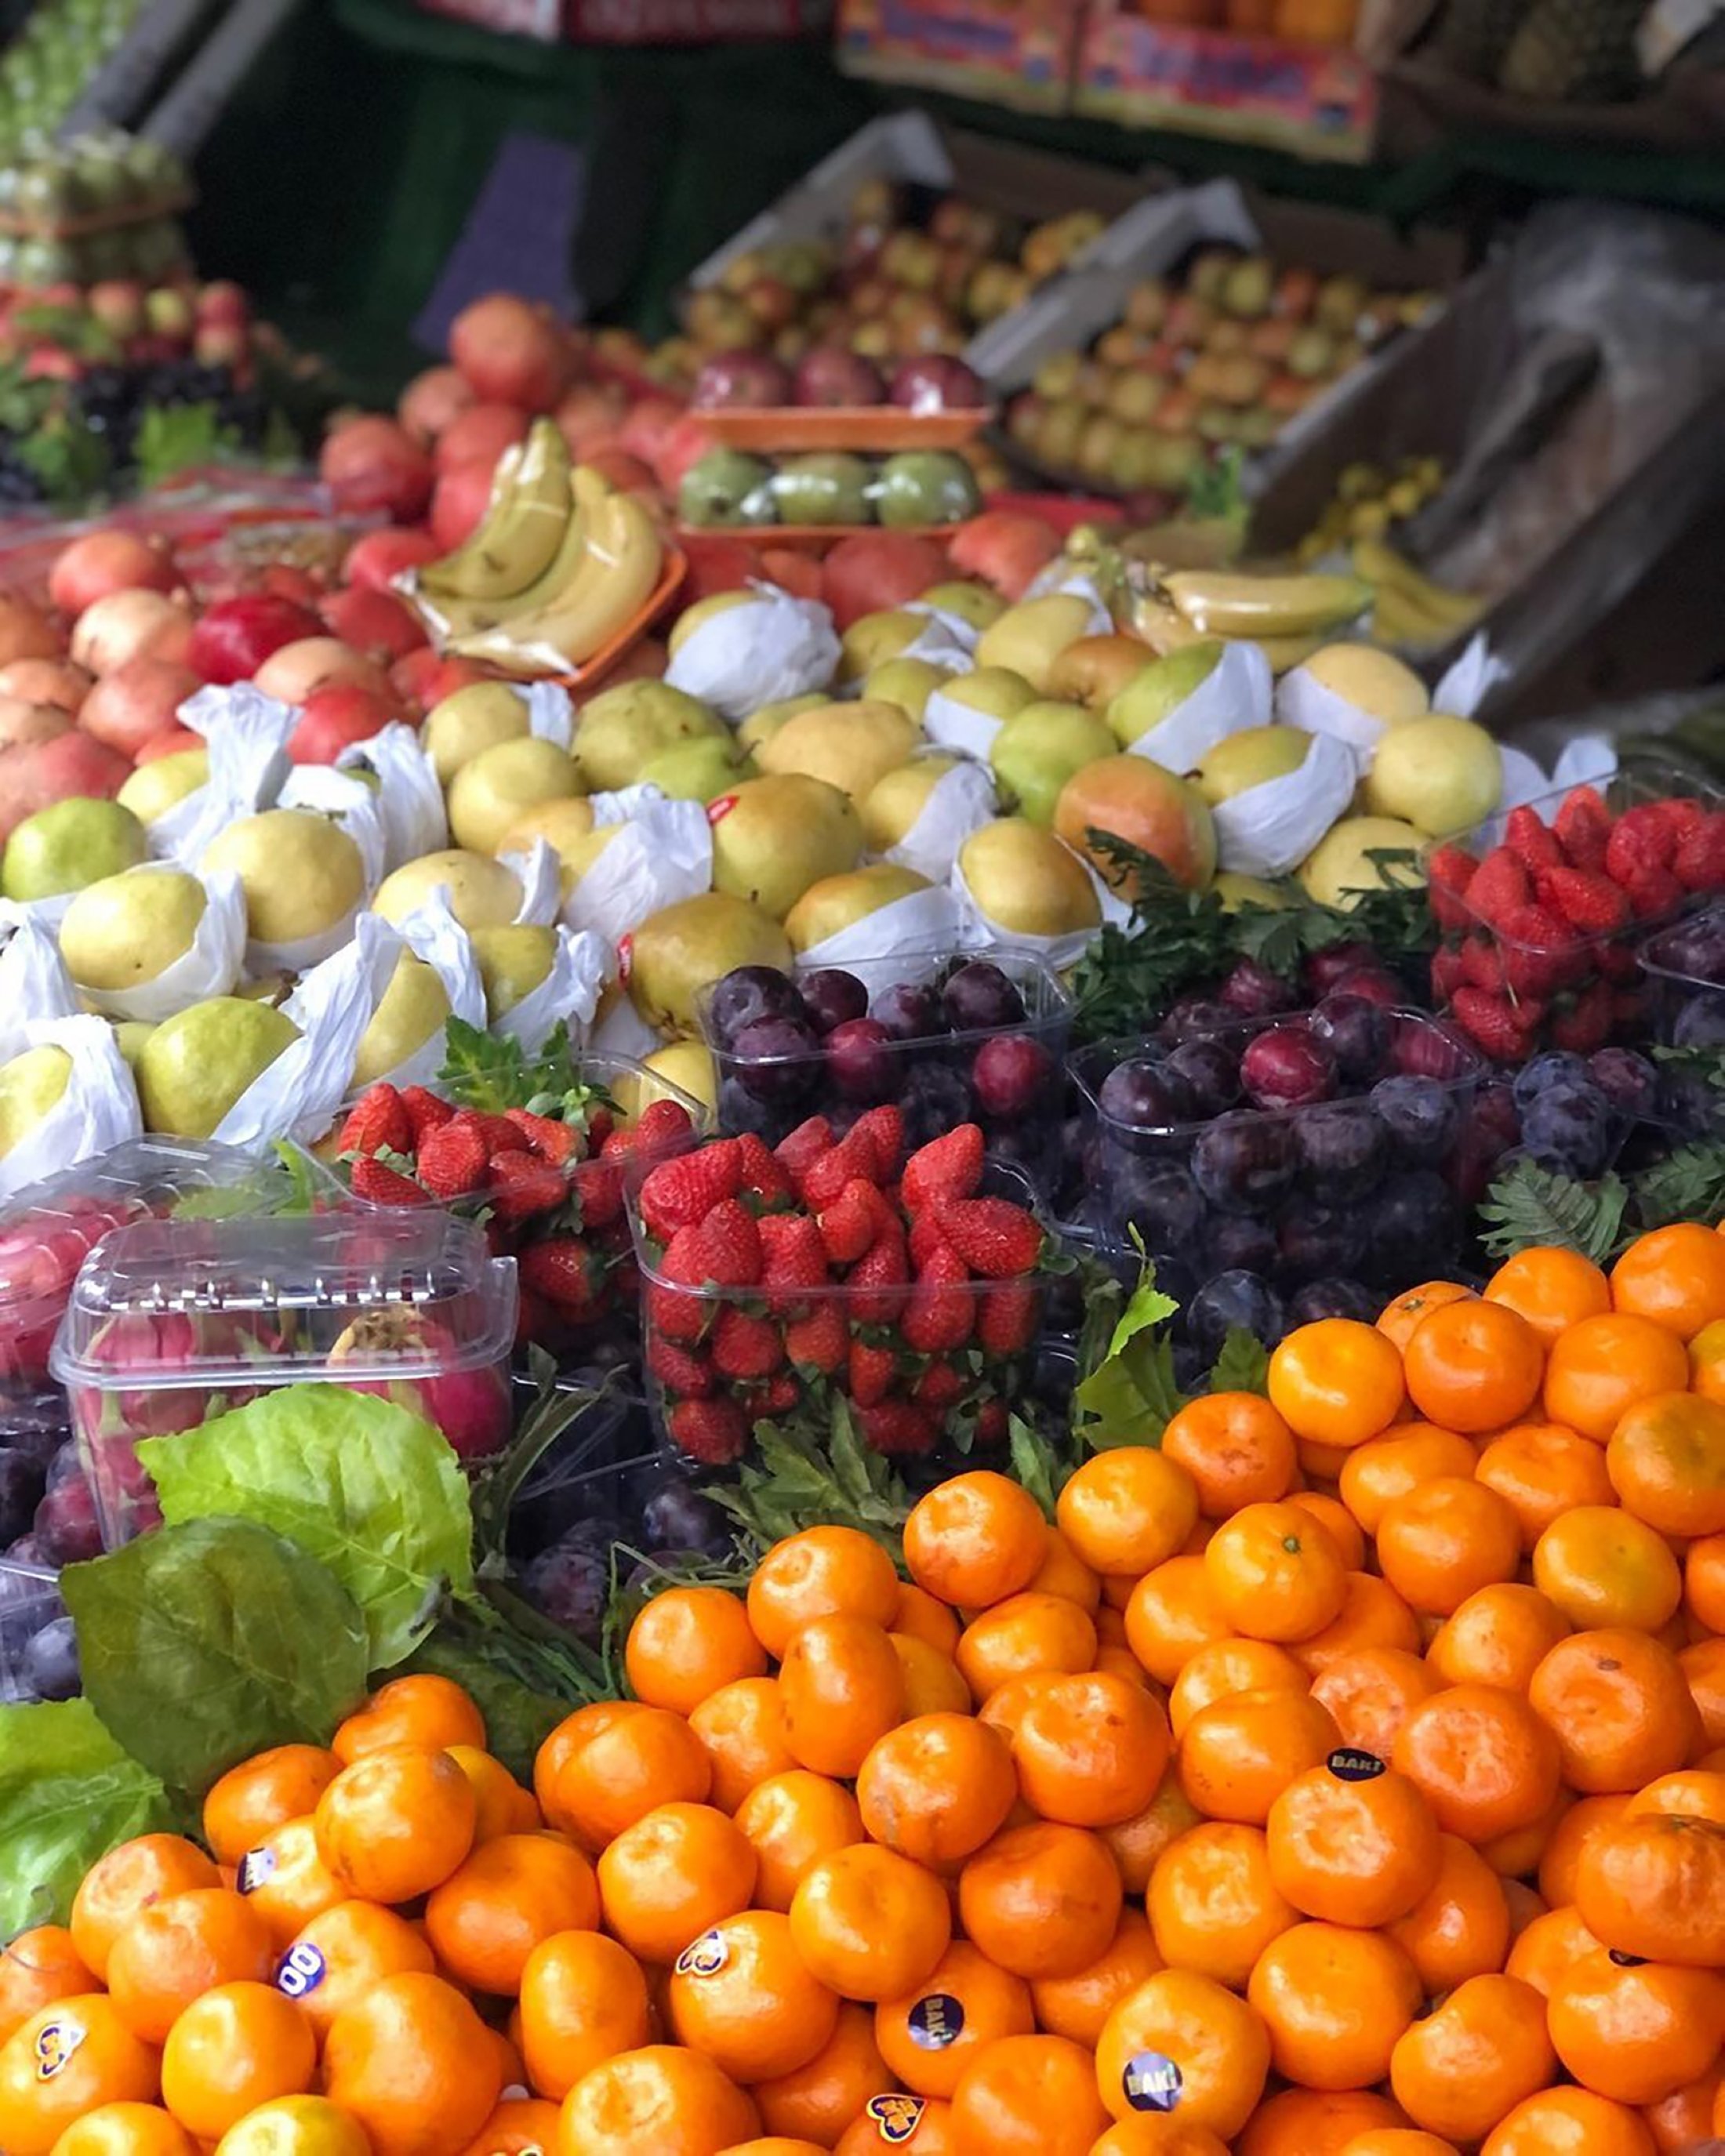 Berbagai jenis buah-buahan dapat dilihat di stan penjual sayur Umut, di Istanbul, Turki.  (Dari Instagram / @umutsarkuteri)